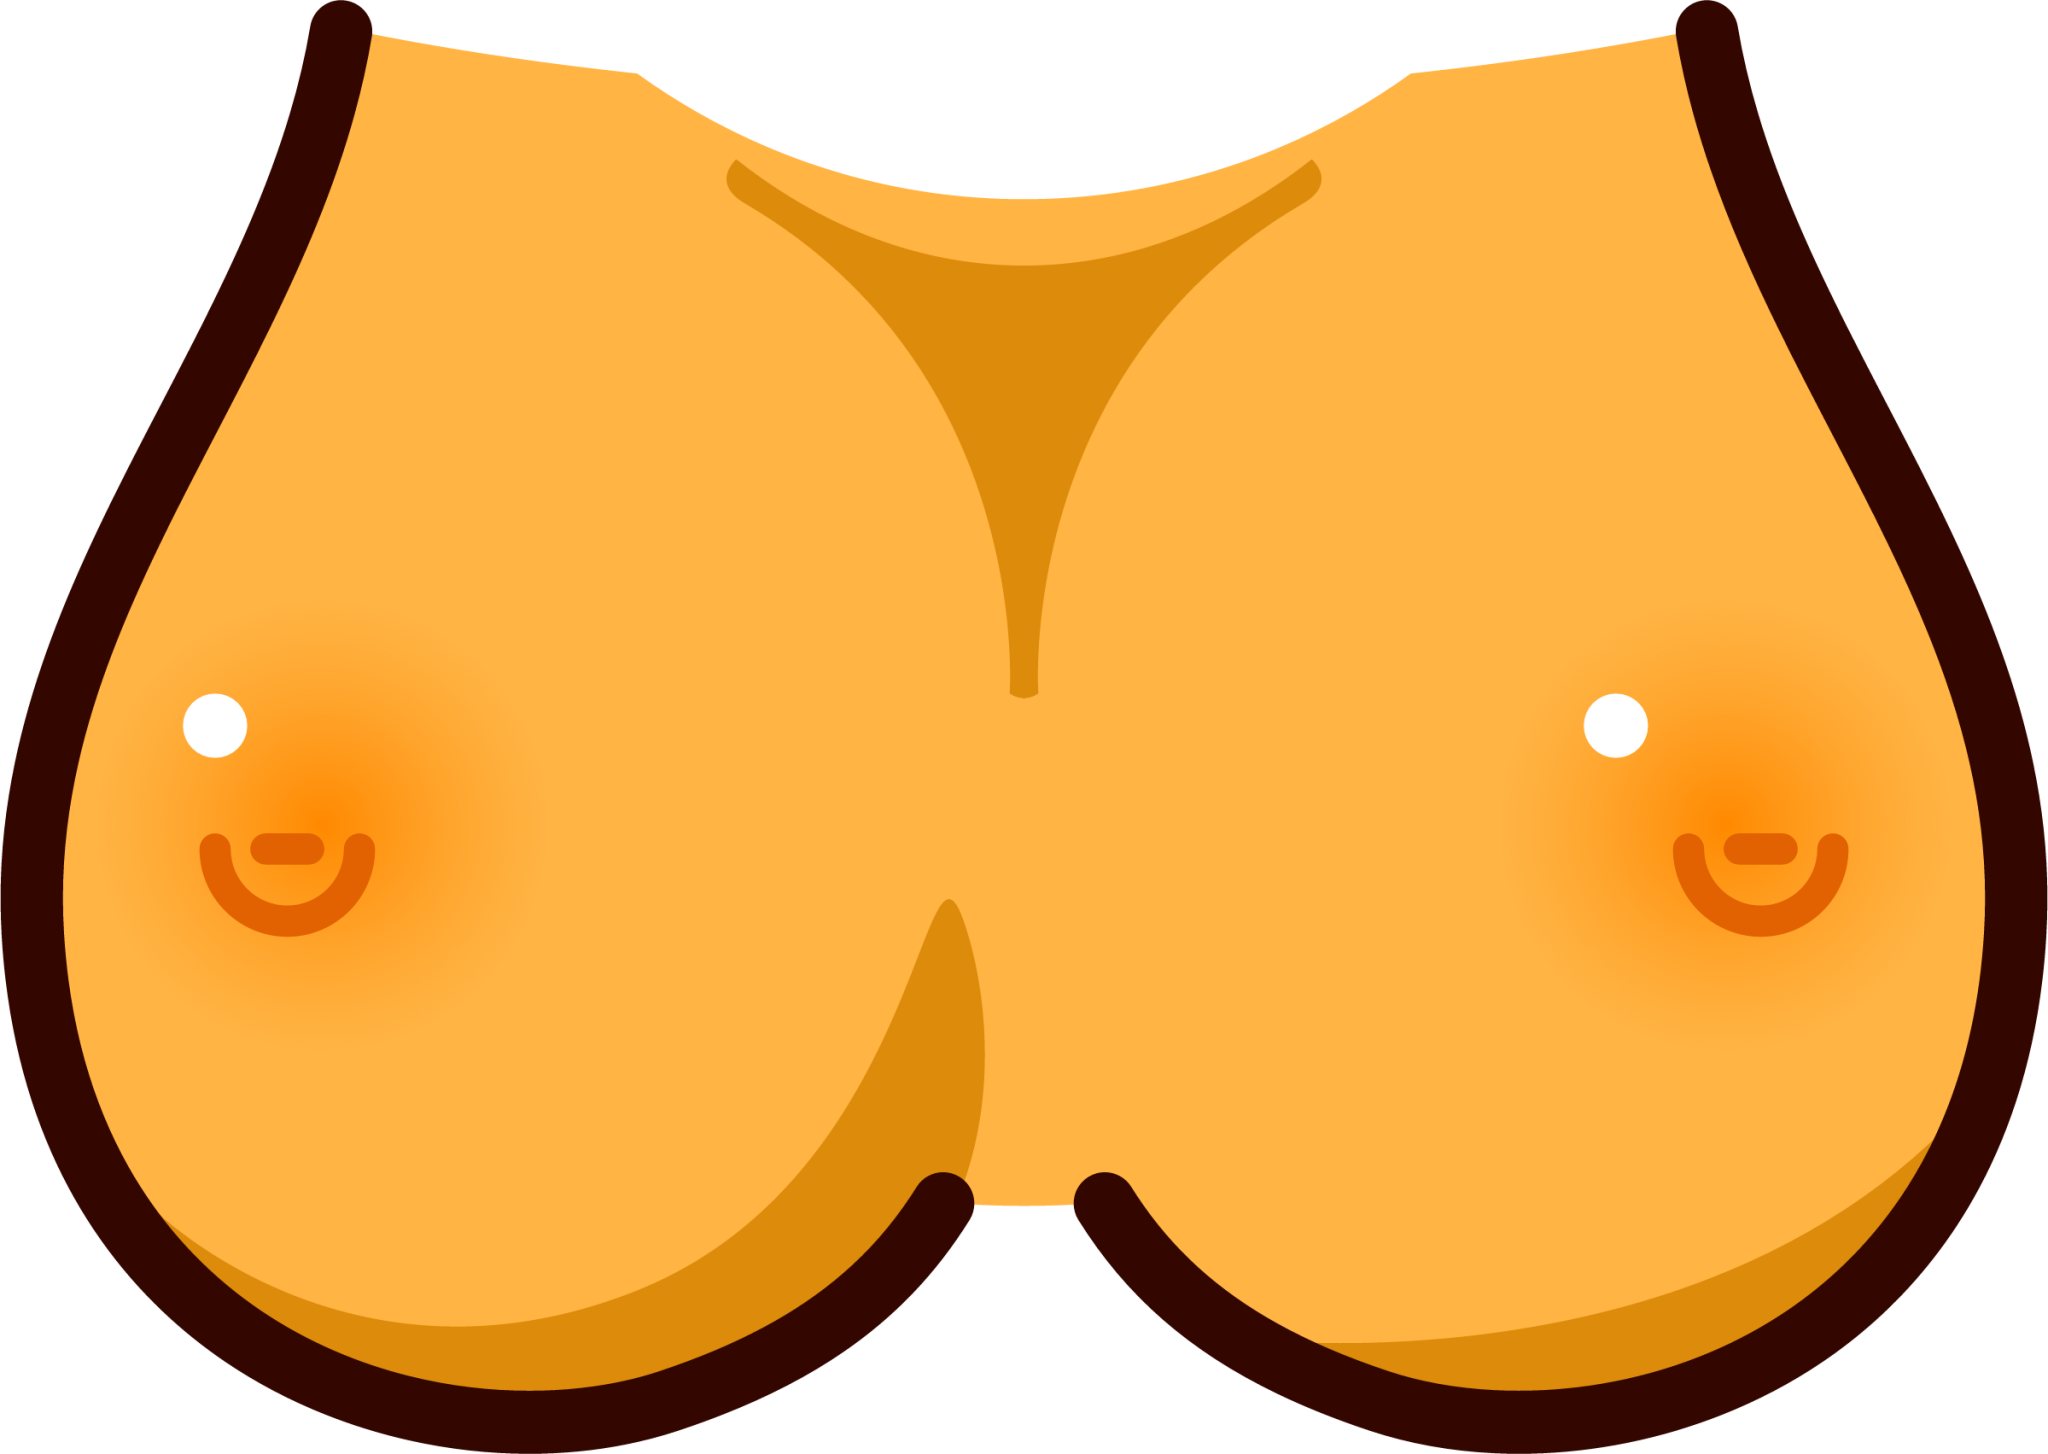 Big tits emoji